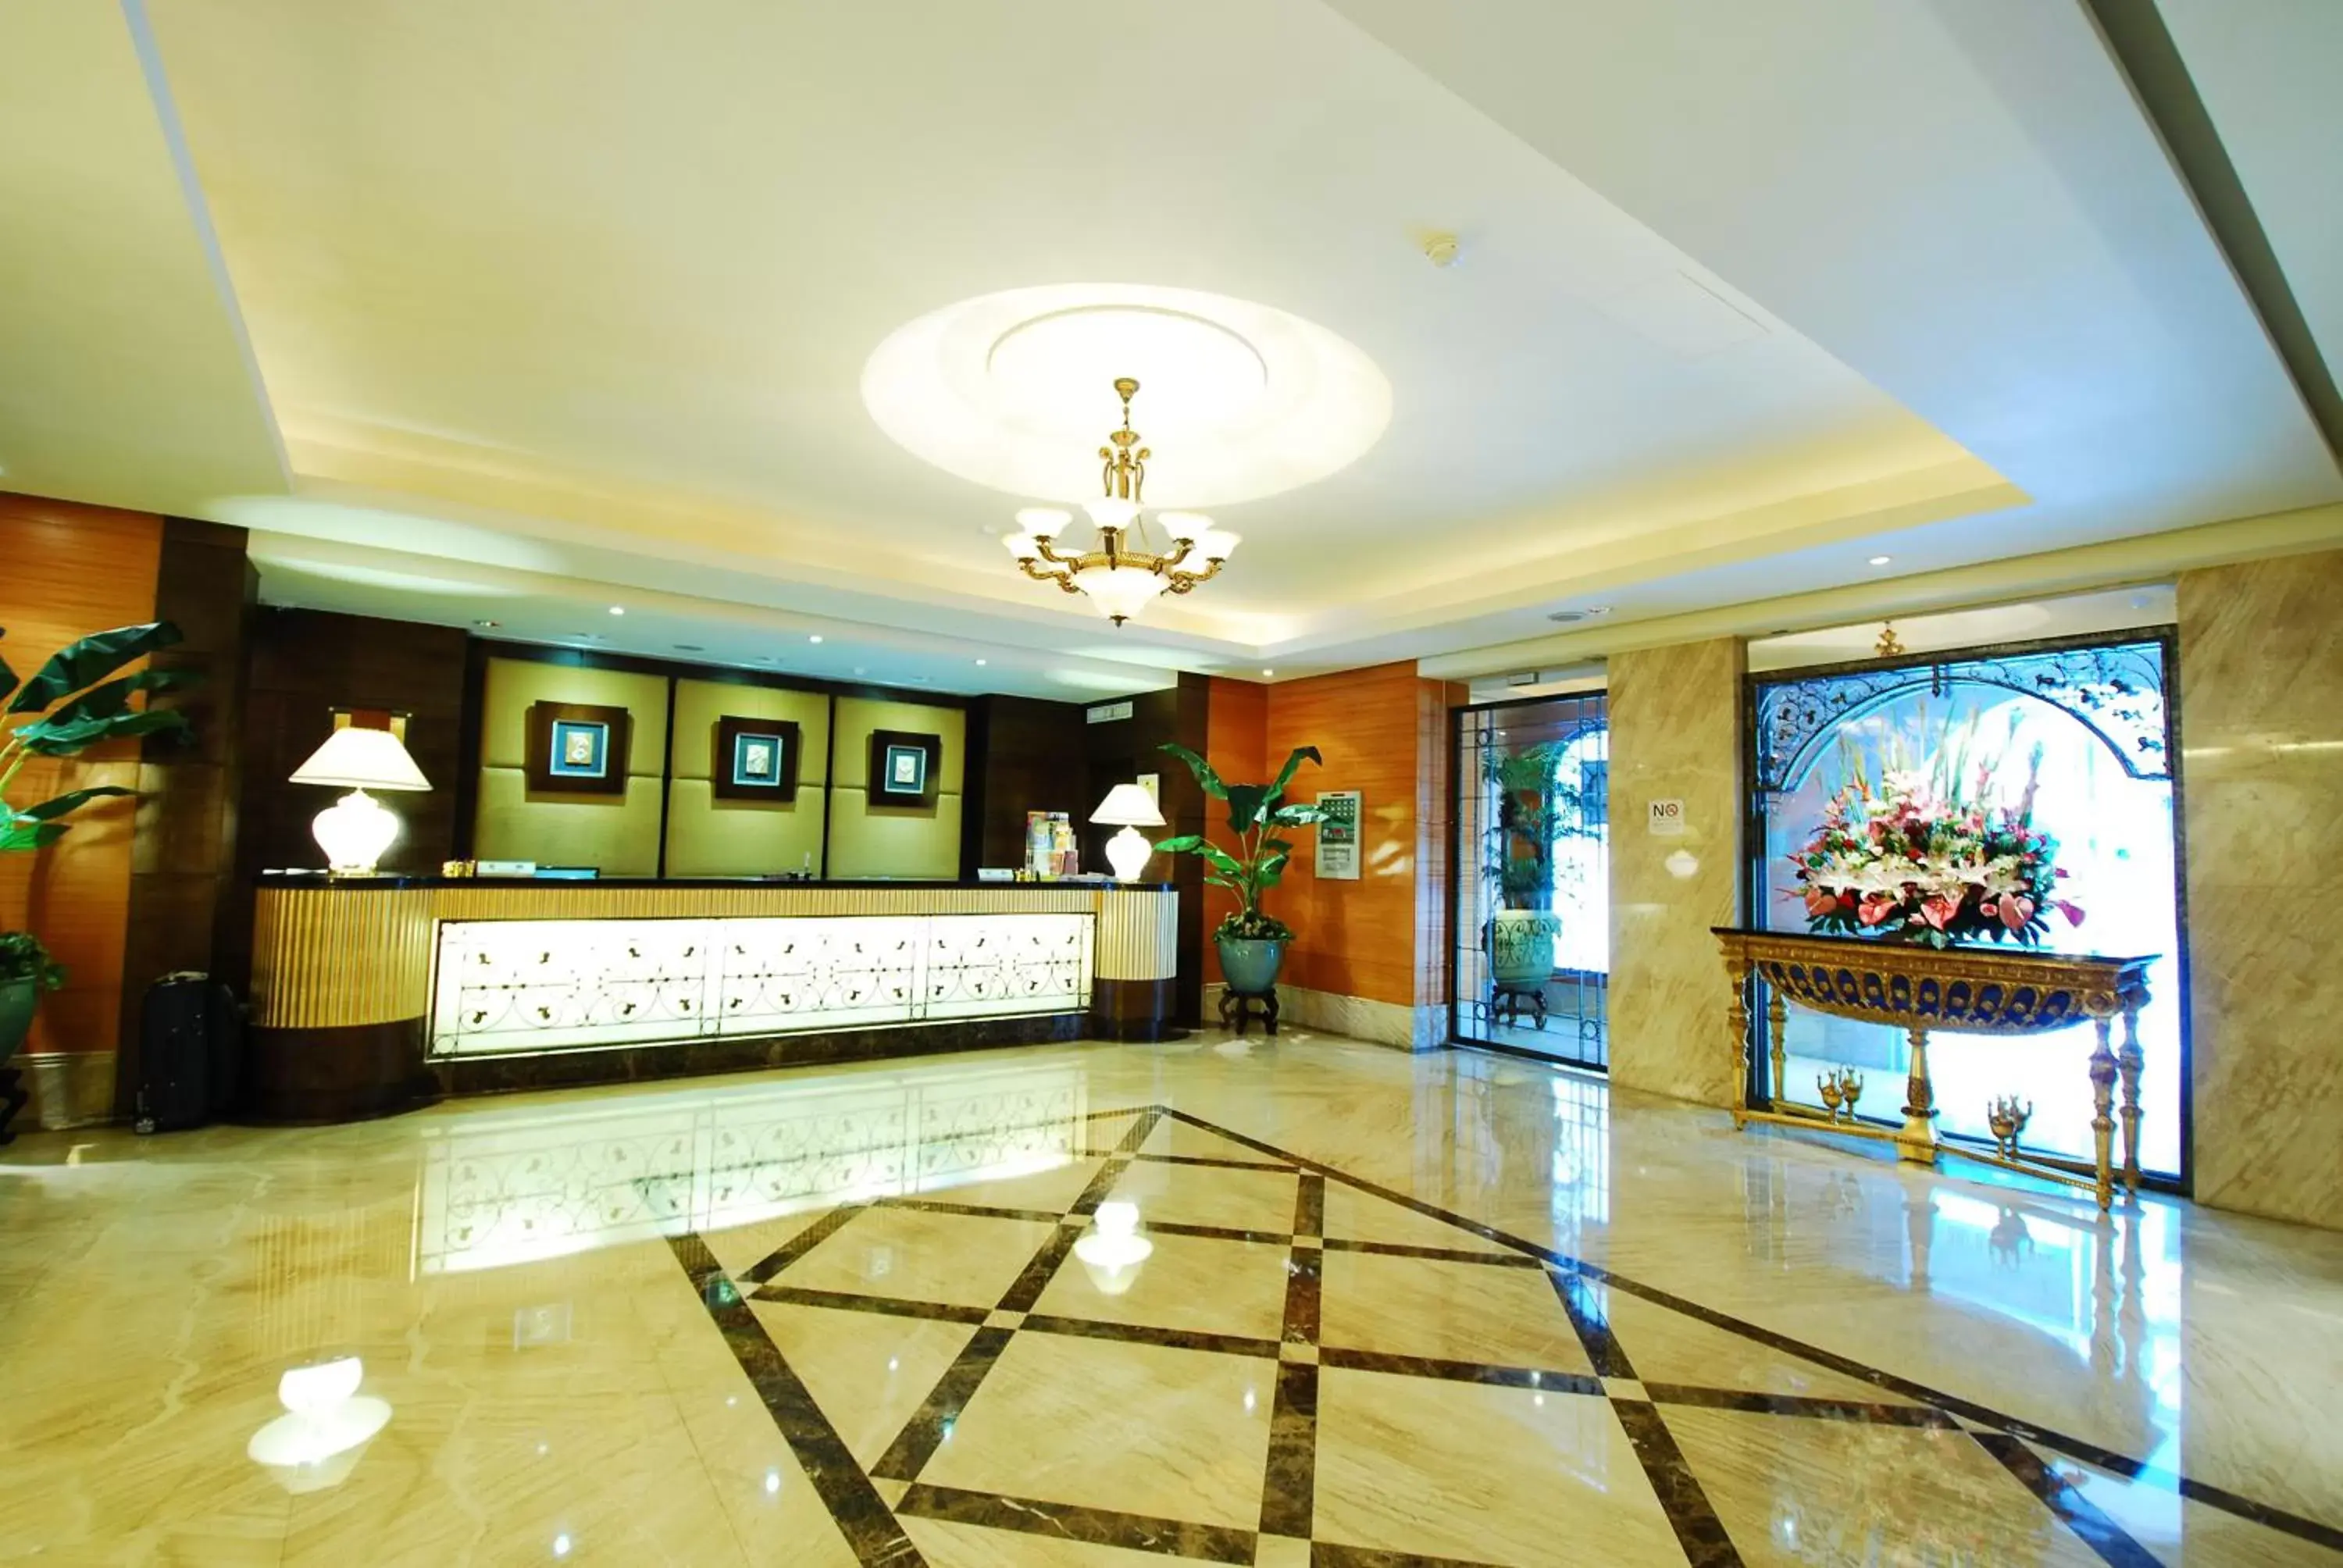 Lobby or reception, Lobby/Reception in Waikoloa Hotel